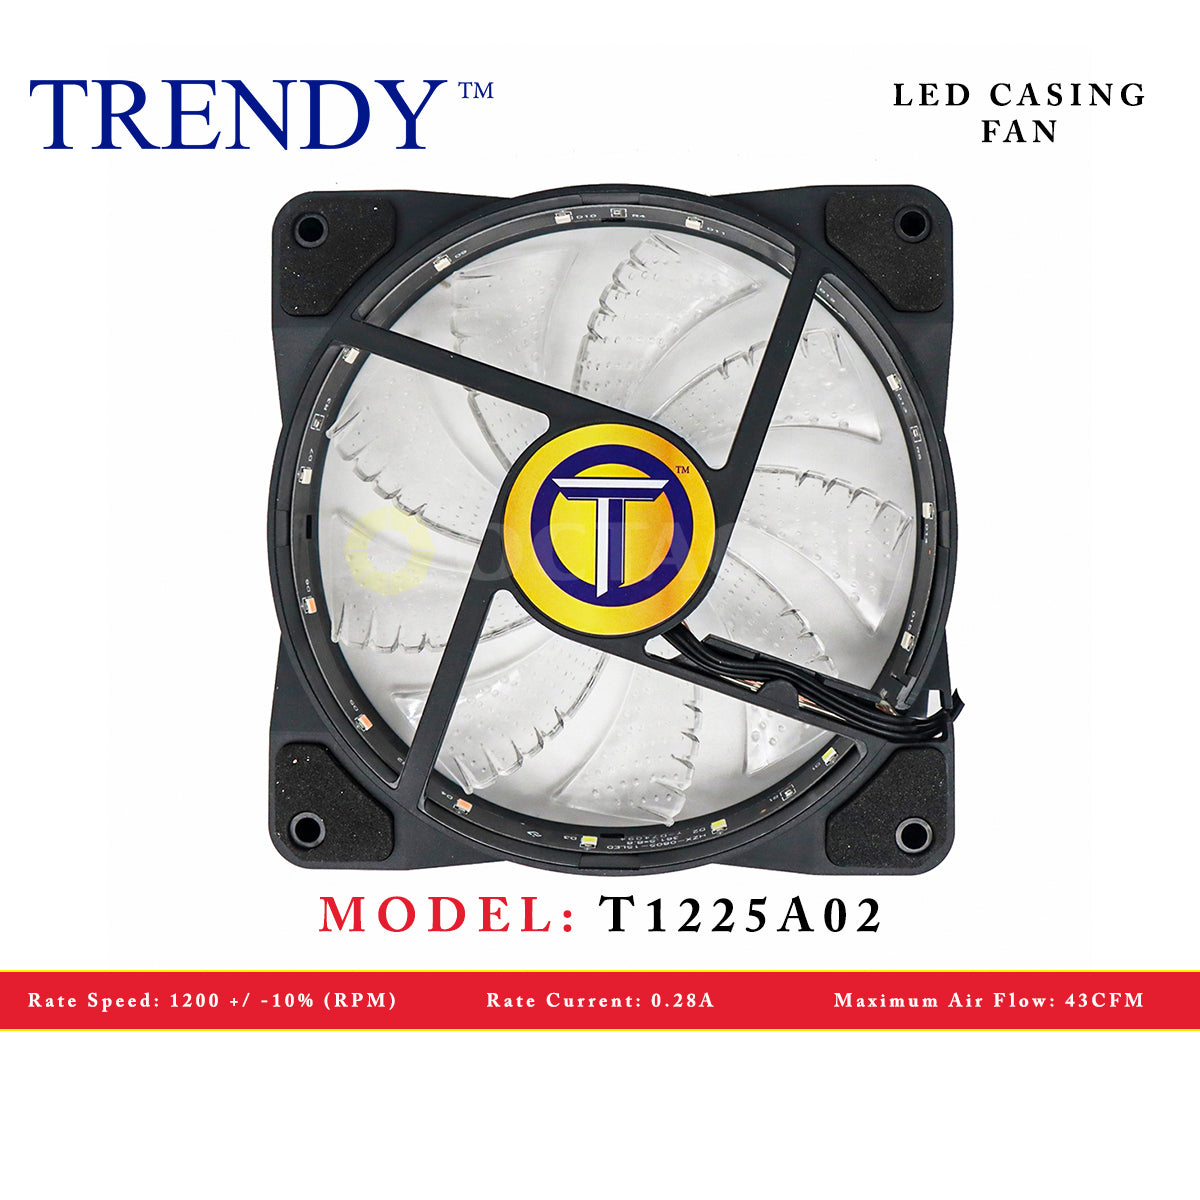 TRENDY T1225A02 LED CASING FAN